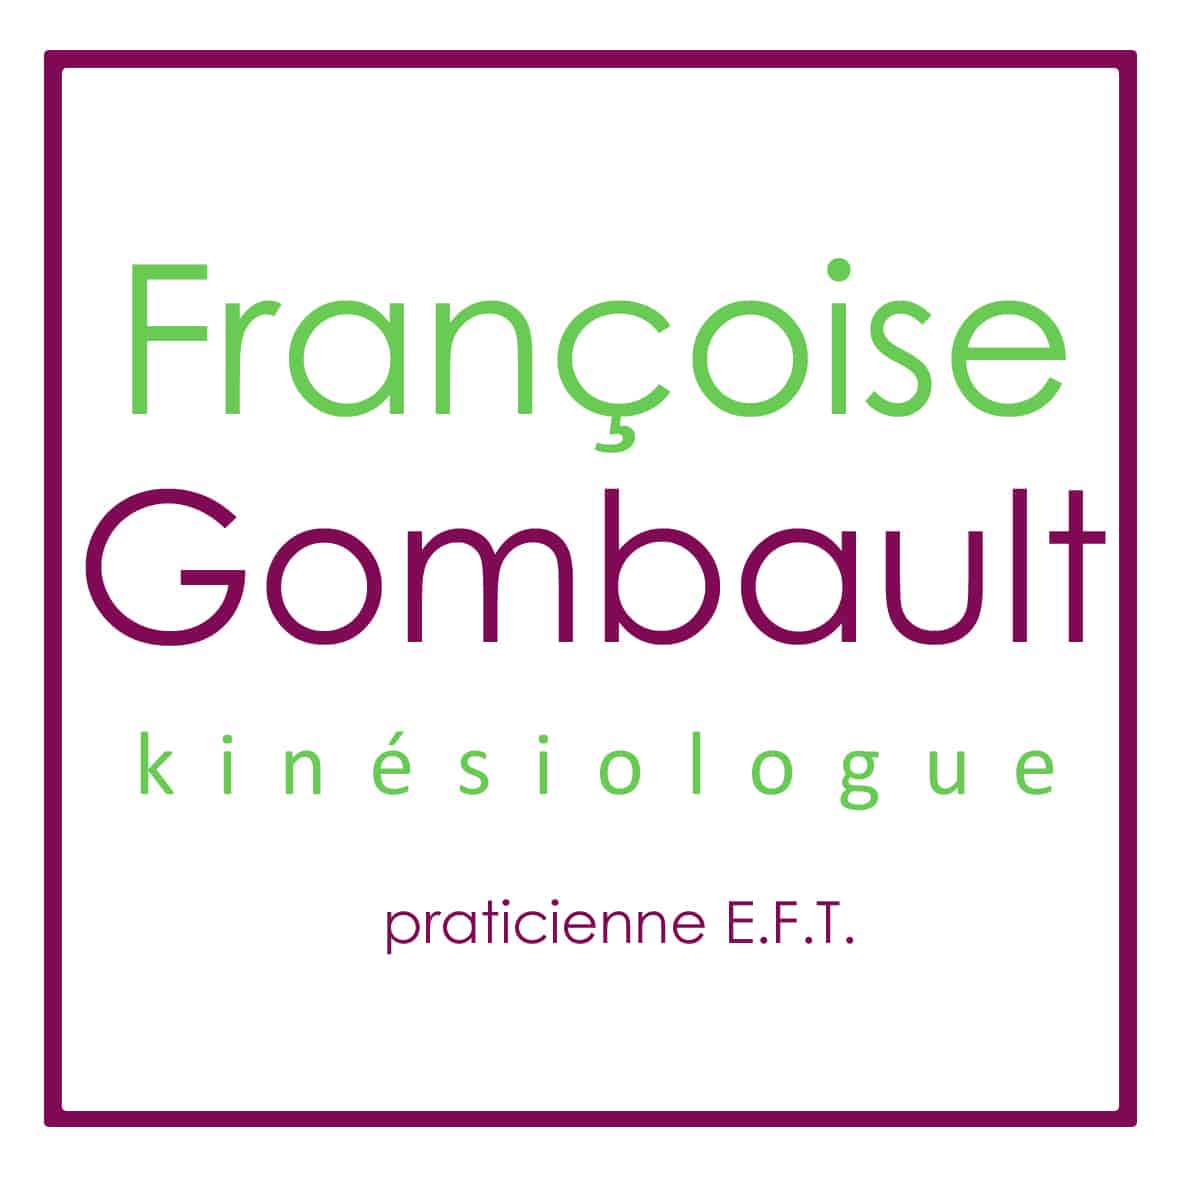 LOGO FRANCOISE GOMBAULT[1]